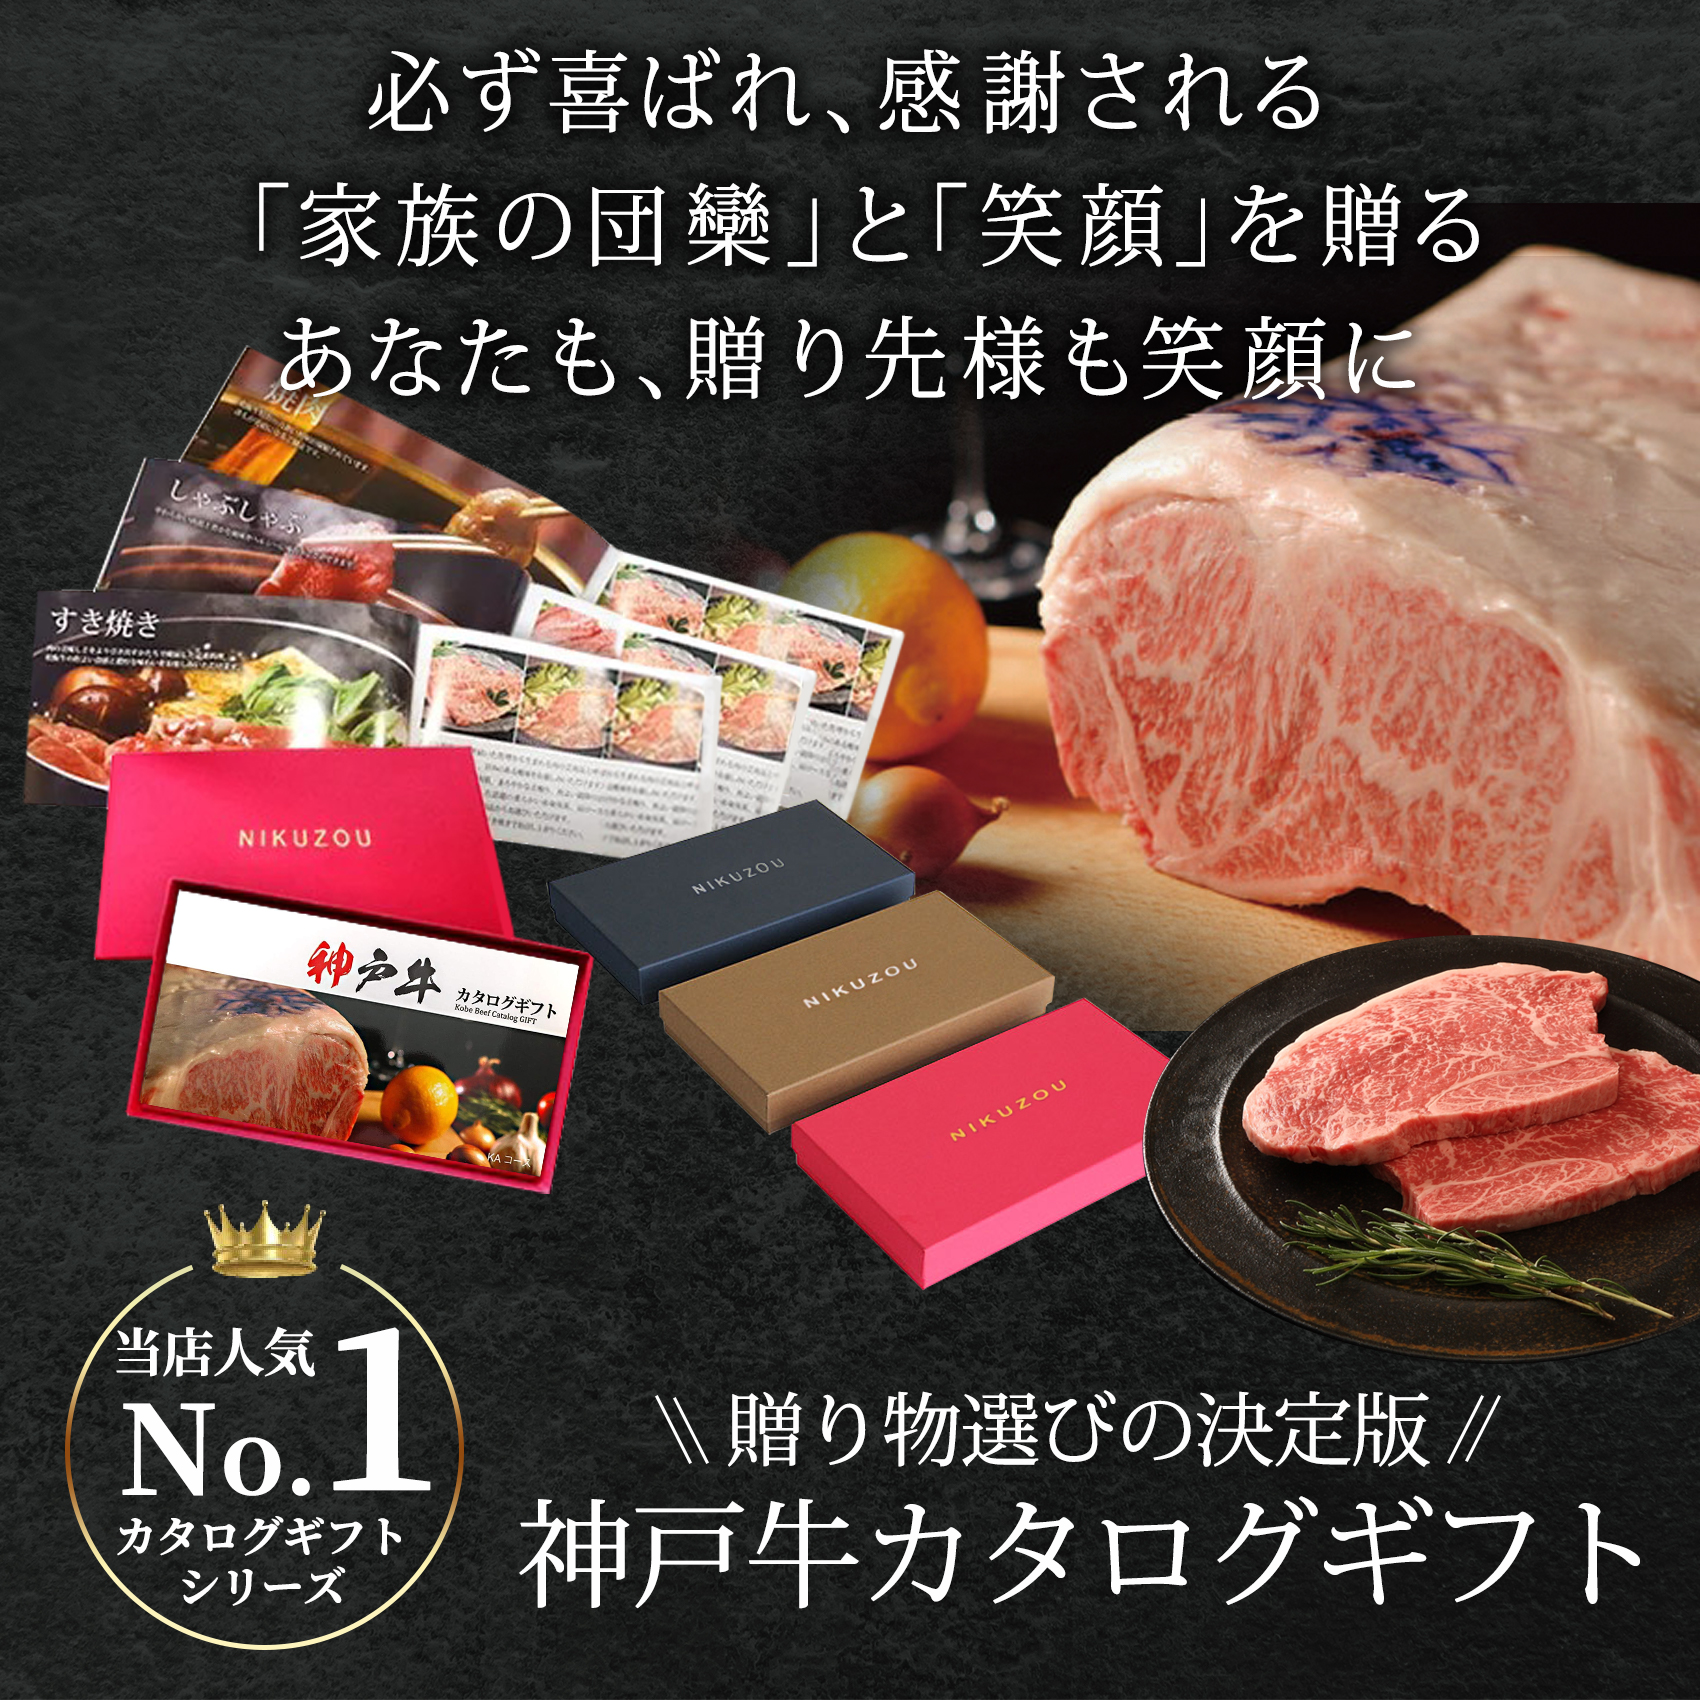 神戸牛カタログギフト10000円 | 選べる神戸ビーフギフト券なら肉贈